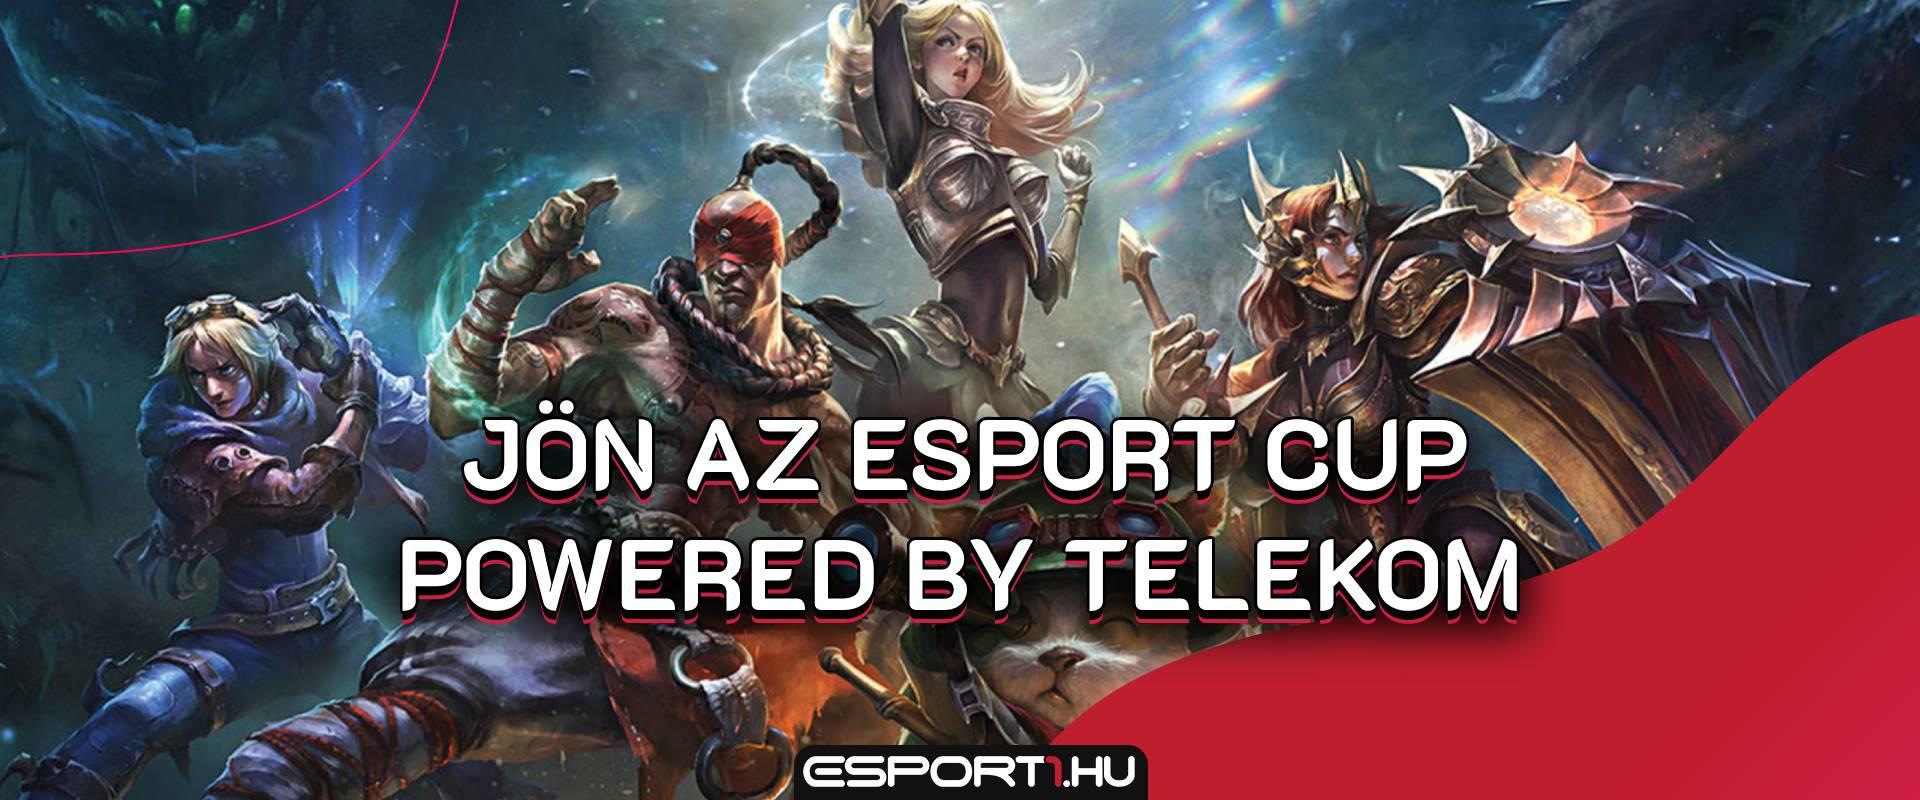 Gamereknek kötelező: elindult a nevezés az Esport CUP powered by Telekom e-sportversenyre